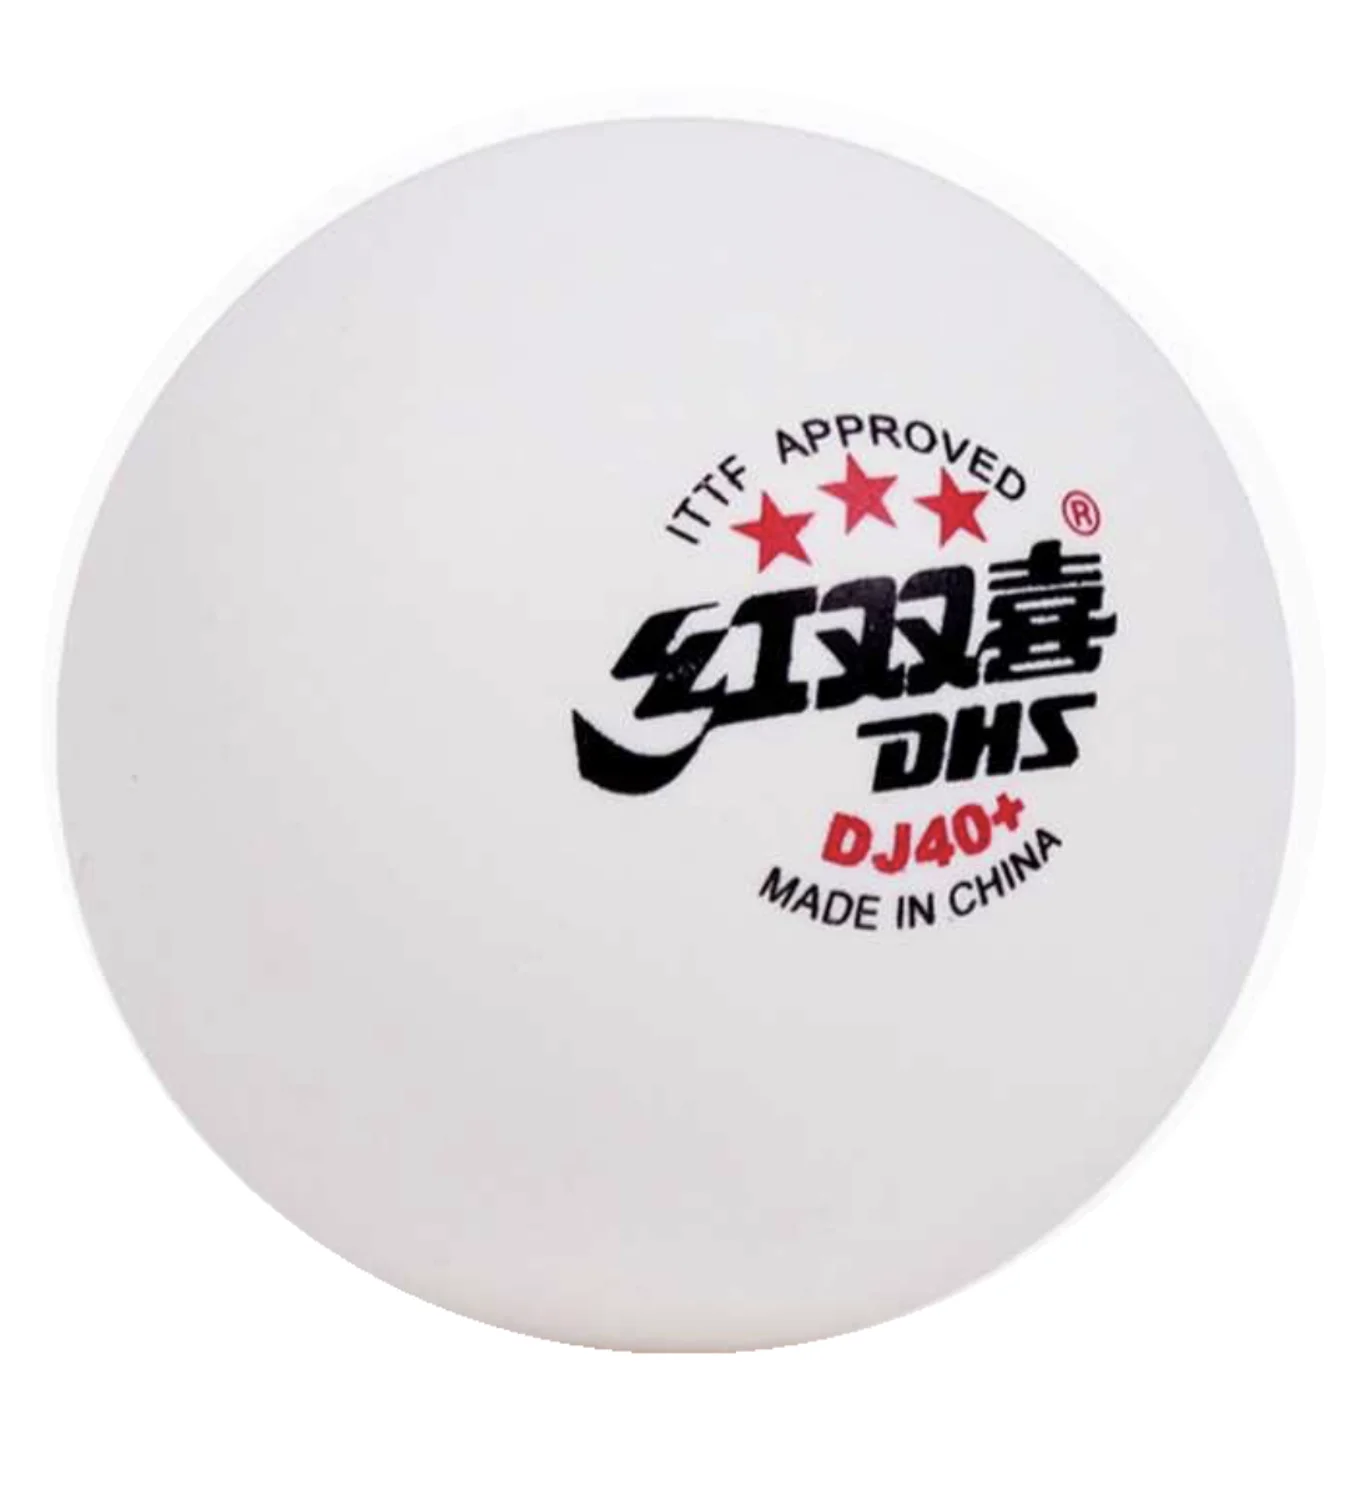 3 мяч для настольного тенниса. Мячи для настольного тенниса ДХС 40+. Мячи для настольного тенниса DHS. DHS мячи пластиковые dj40+. Настольный теннис мяч DHS 40 + 3 щвезды.